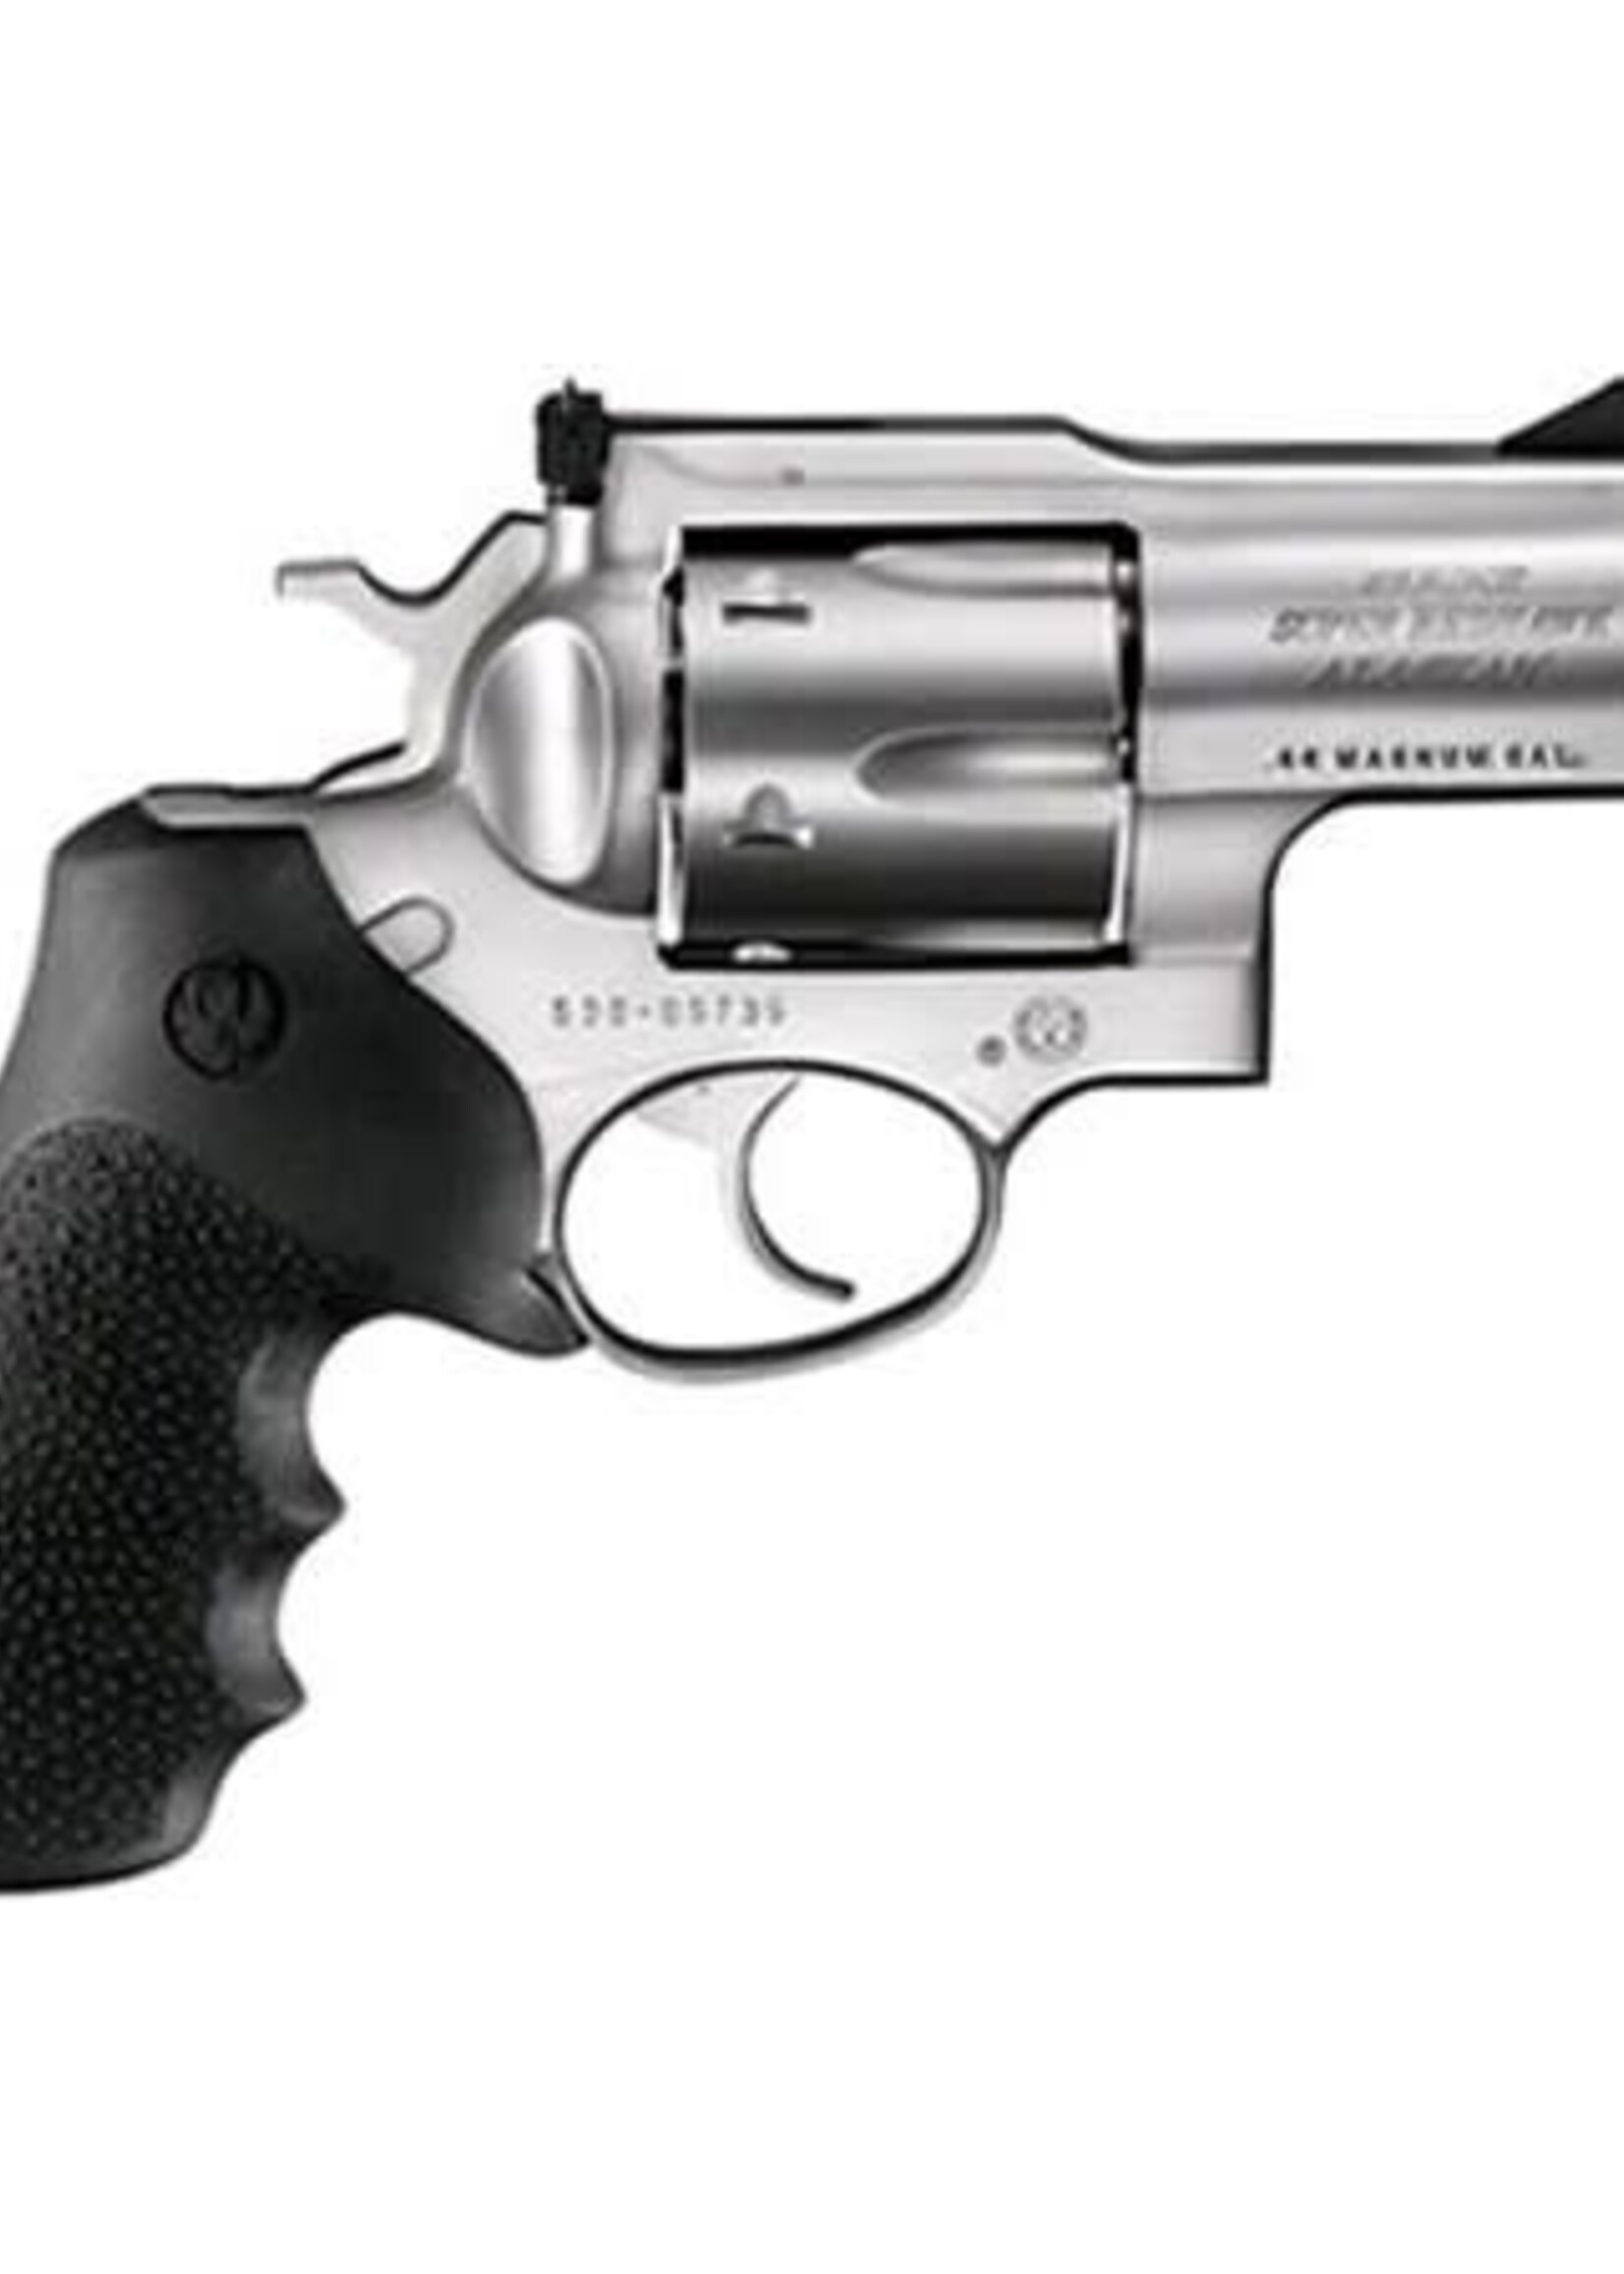 Ruger (USED) Ruger Alaskan 44 Magnum / 44 Special RUKSRH2 SUPER REDHAWK 44MAG ALASKAN 5303 RUBBER GRIPS/STAINLESS 44 Magnum | 44 Special MANUFACTURER: Ruger MFG MDL #: 5303 UPC: 736676053032